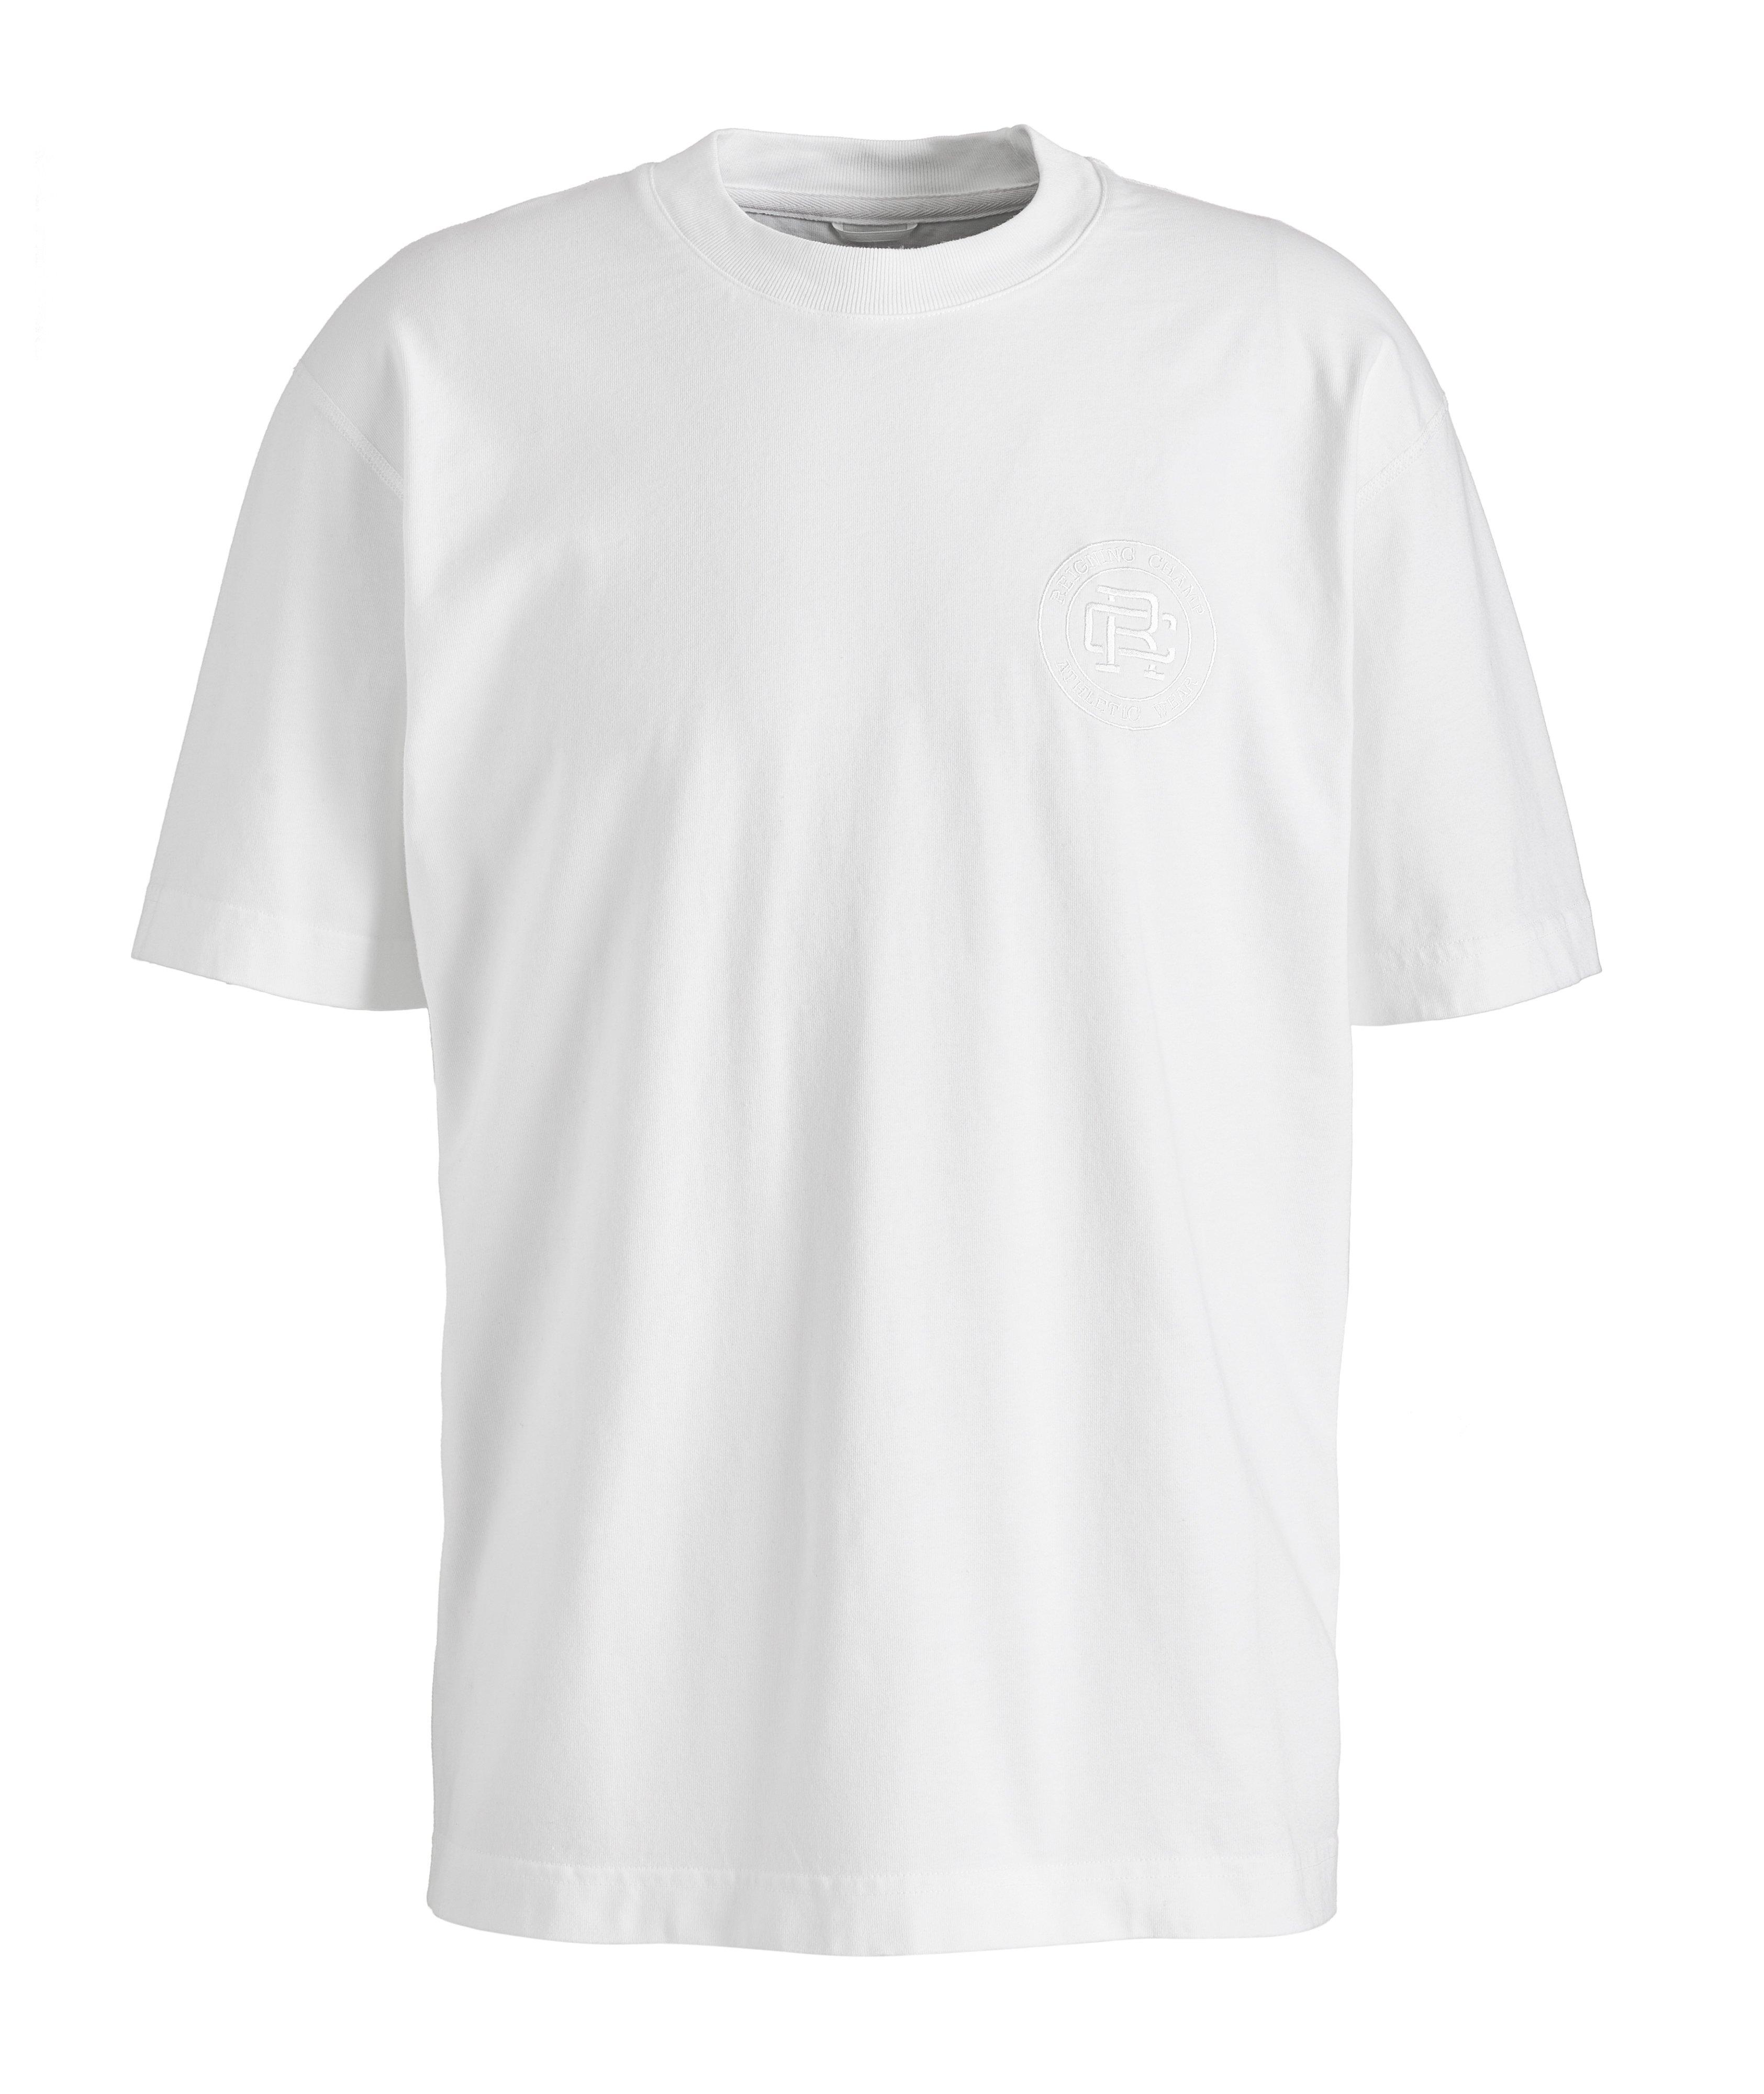 T-shirt en jersey de coton avec logo image 0